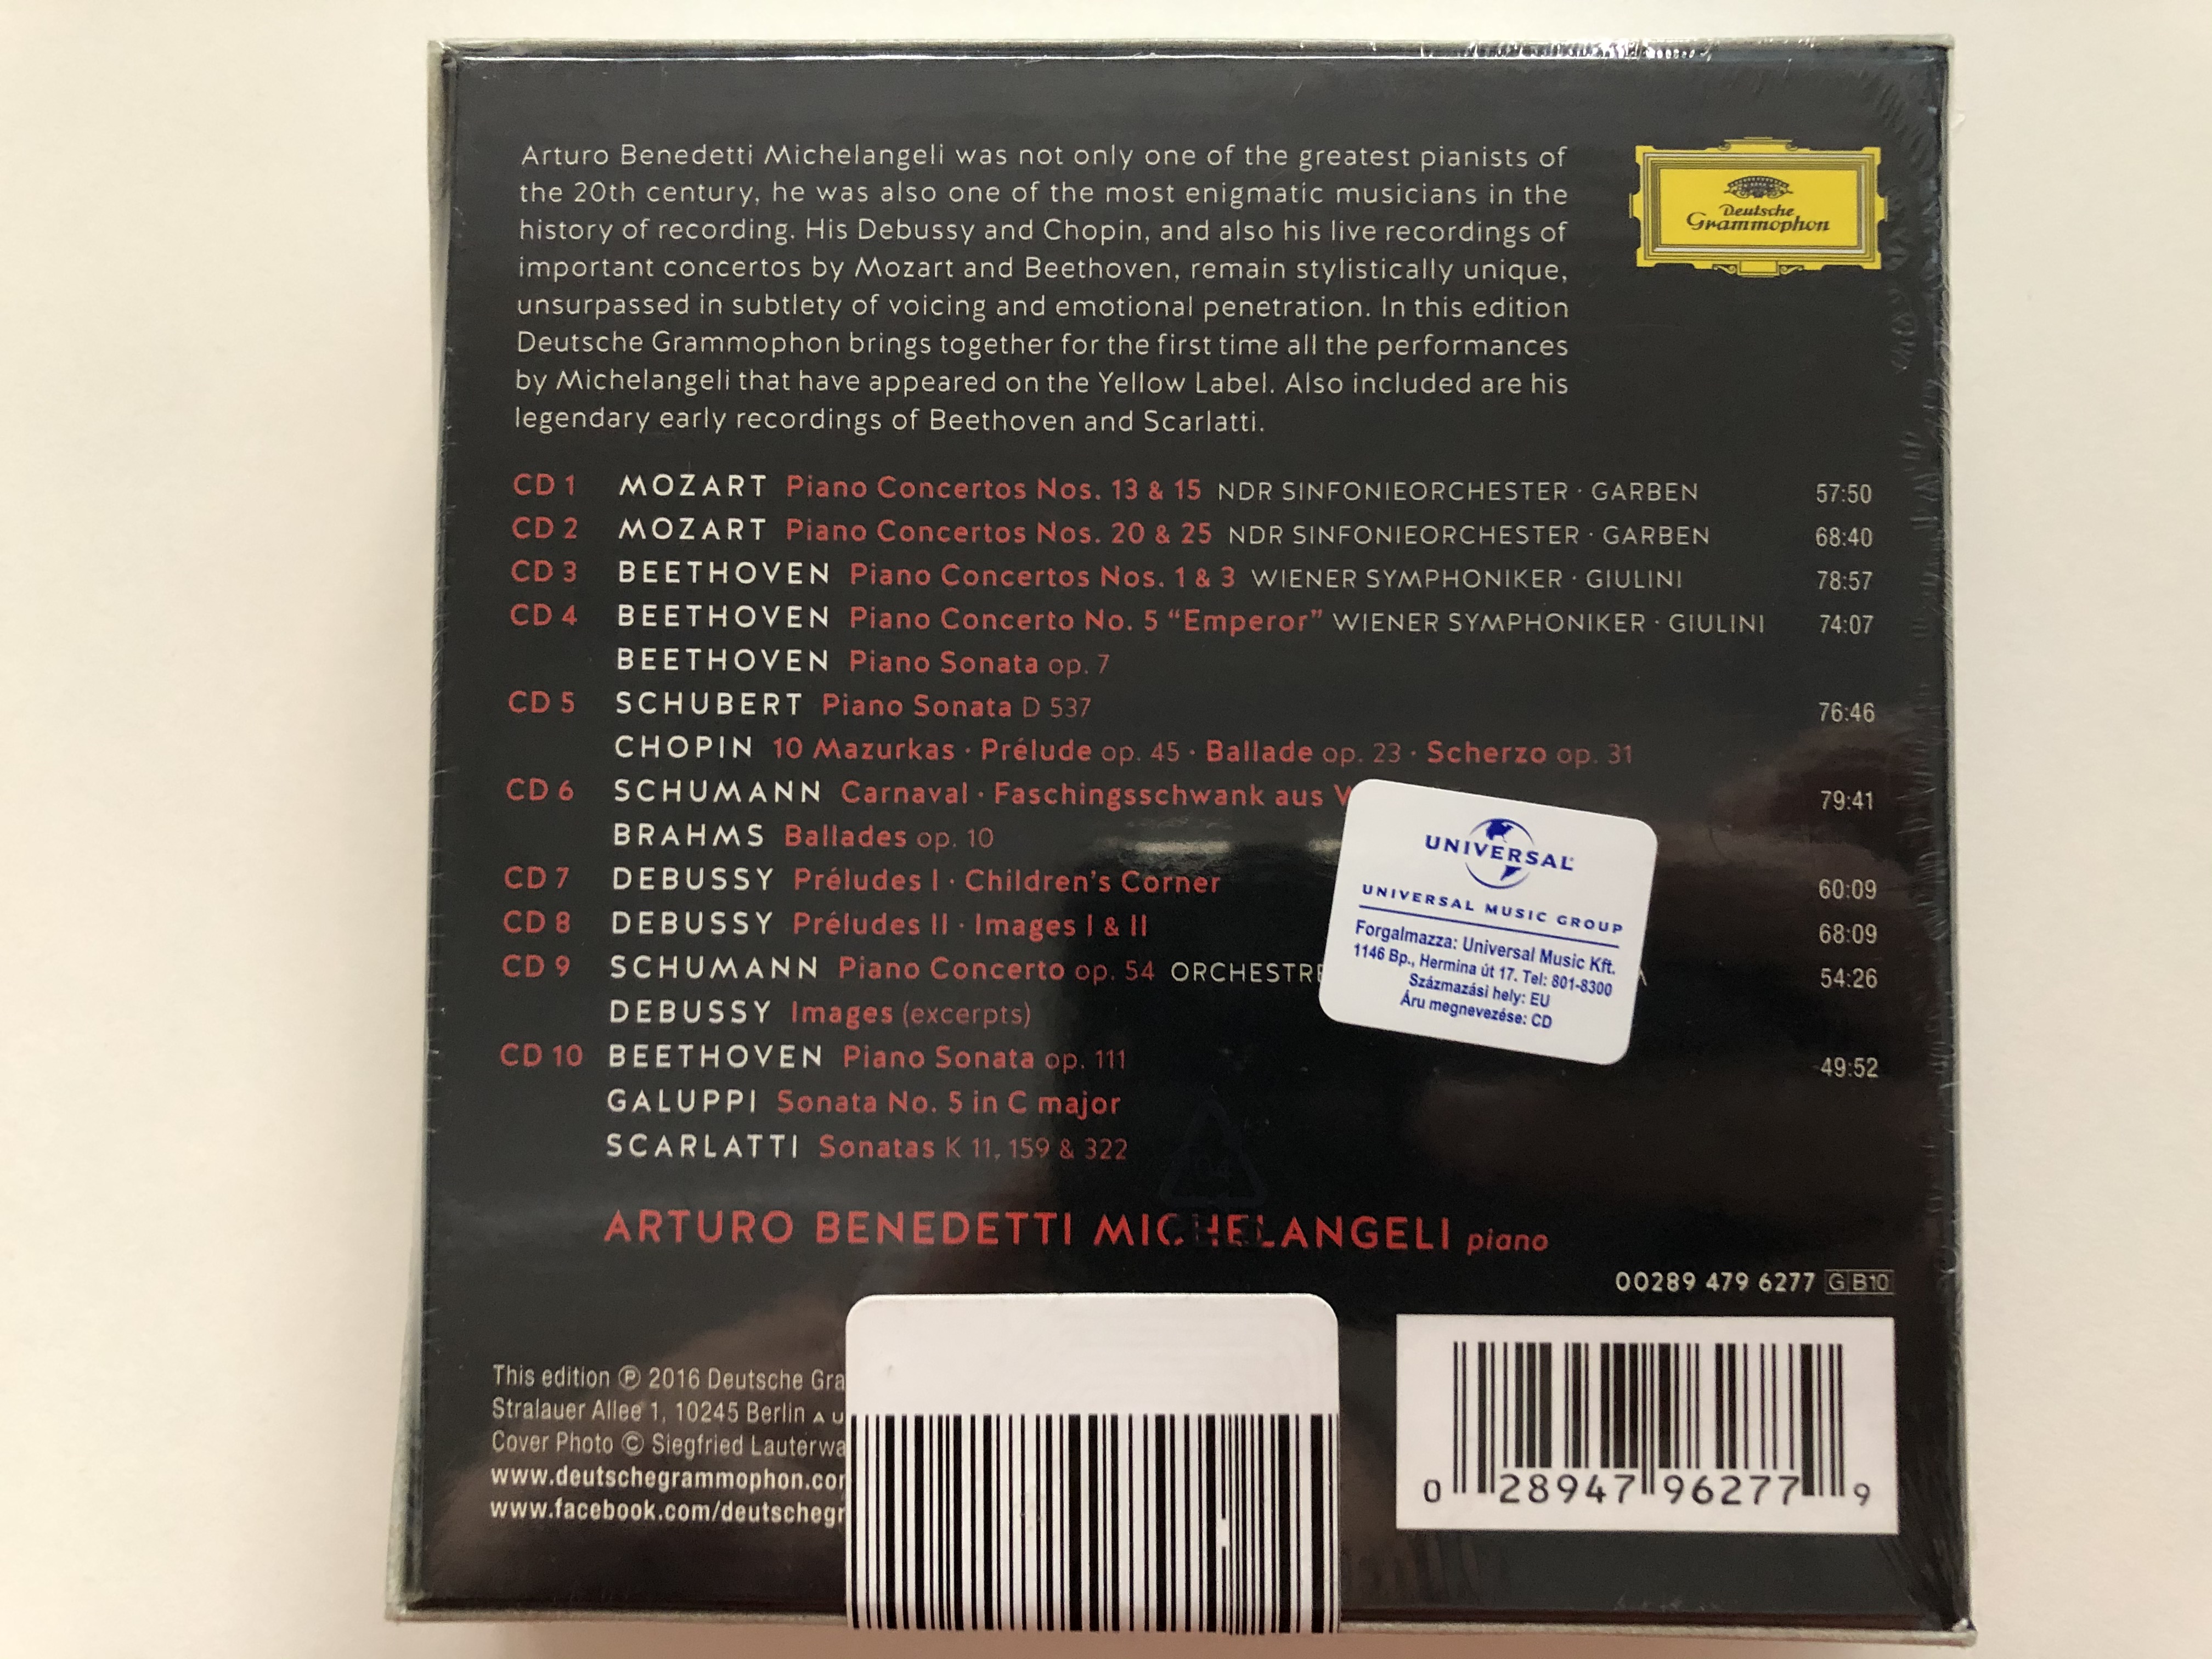 arturo-benedetti-michelangeli-complete-recordings-on-deutsche-grammophon-deutsche-grammophon-10x-audio-cd-2016-00289-479-6277-2-.jpg